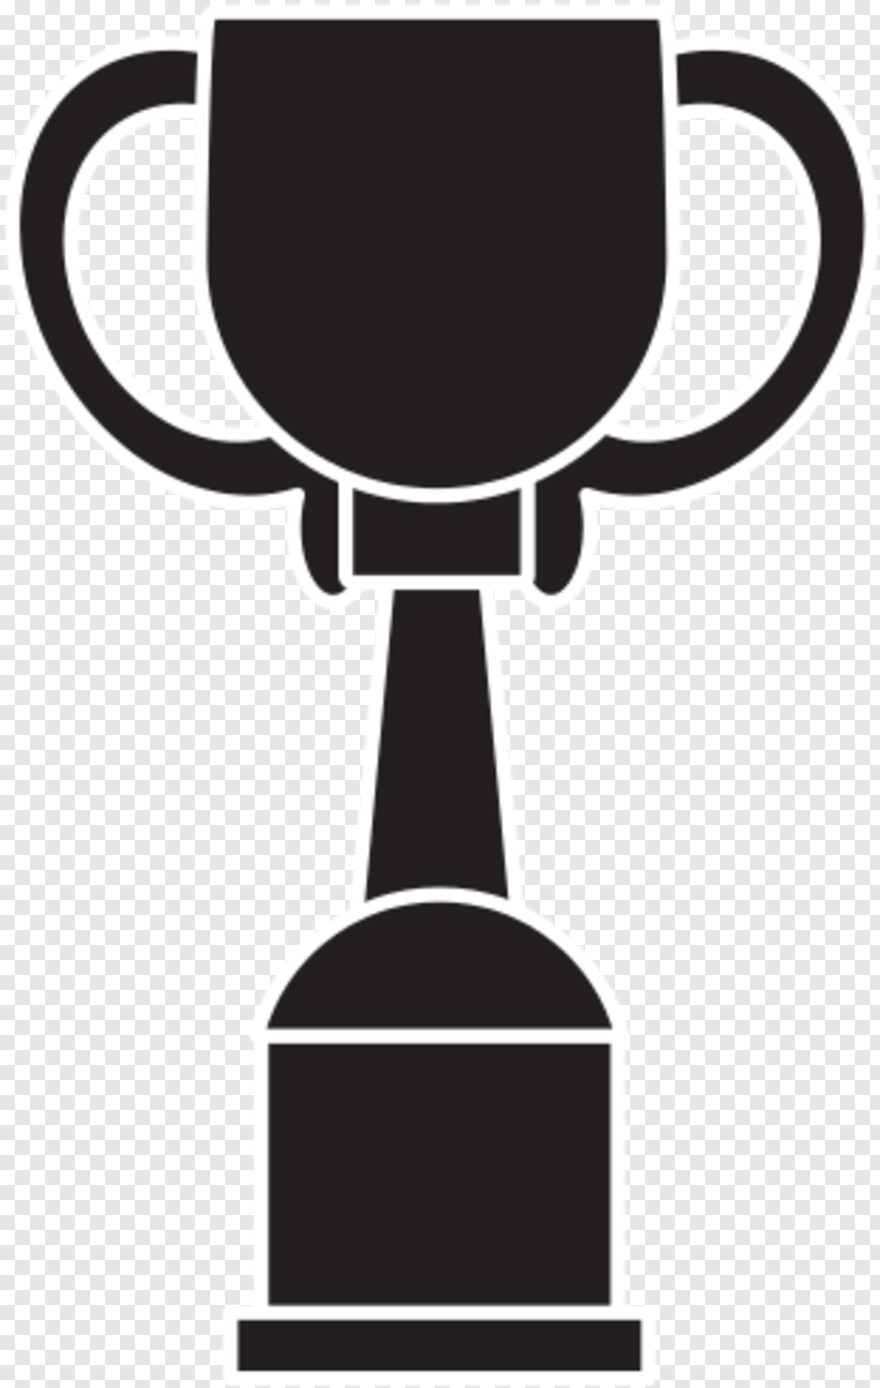 award-trophy # 439735